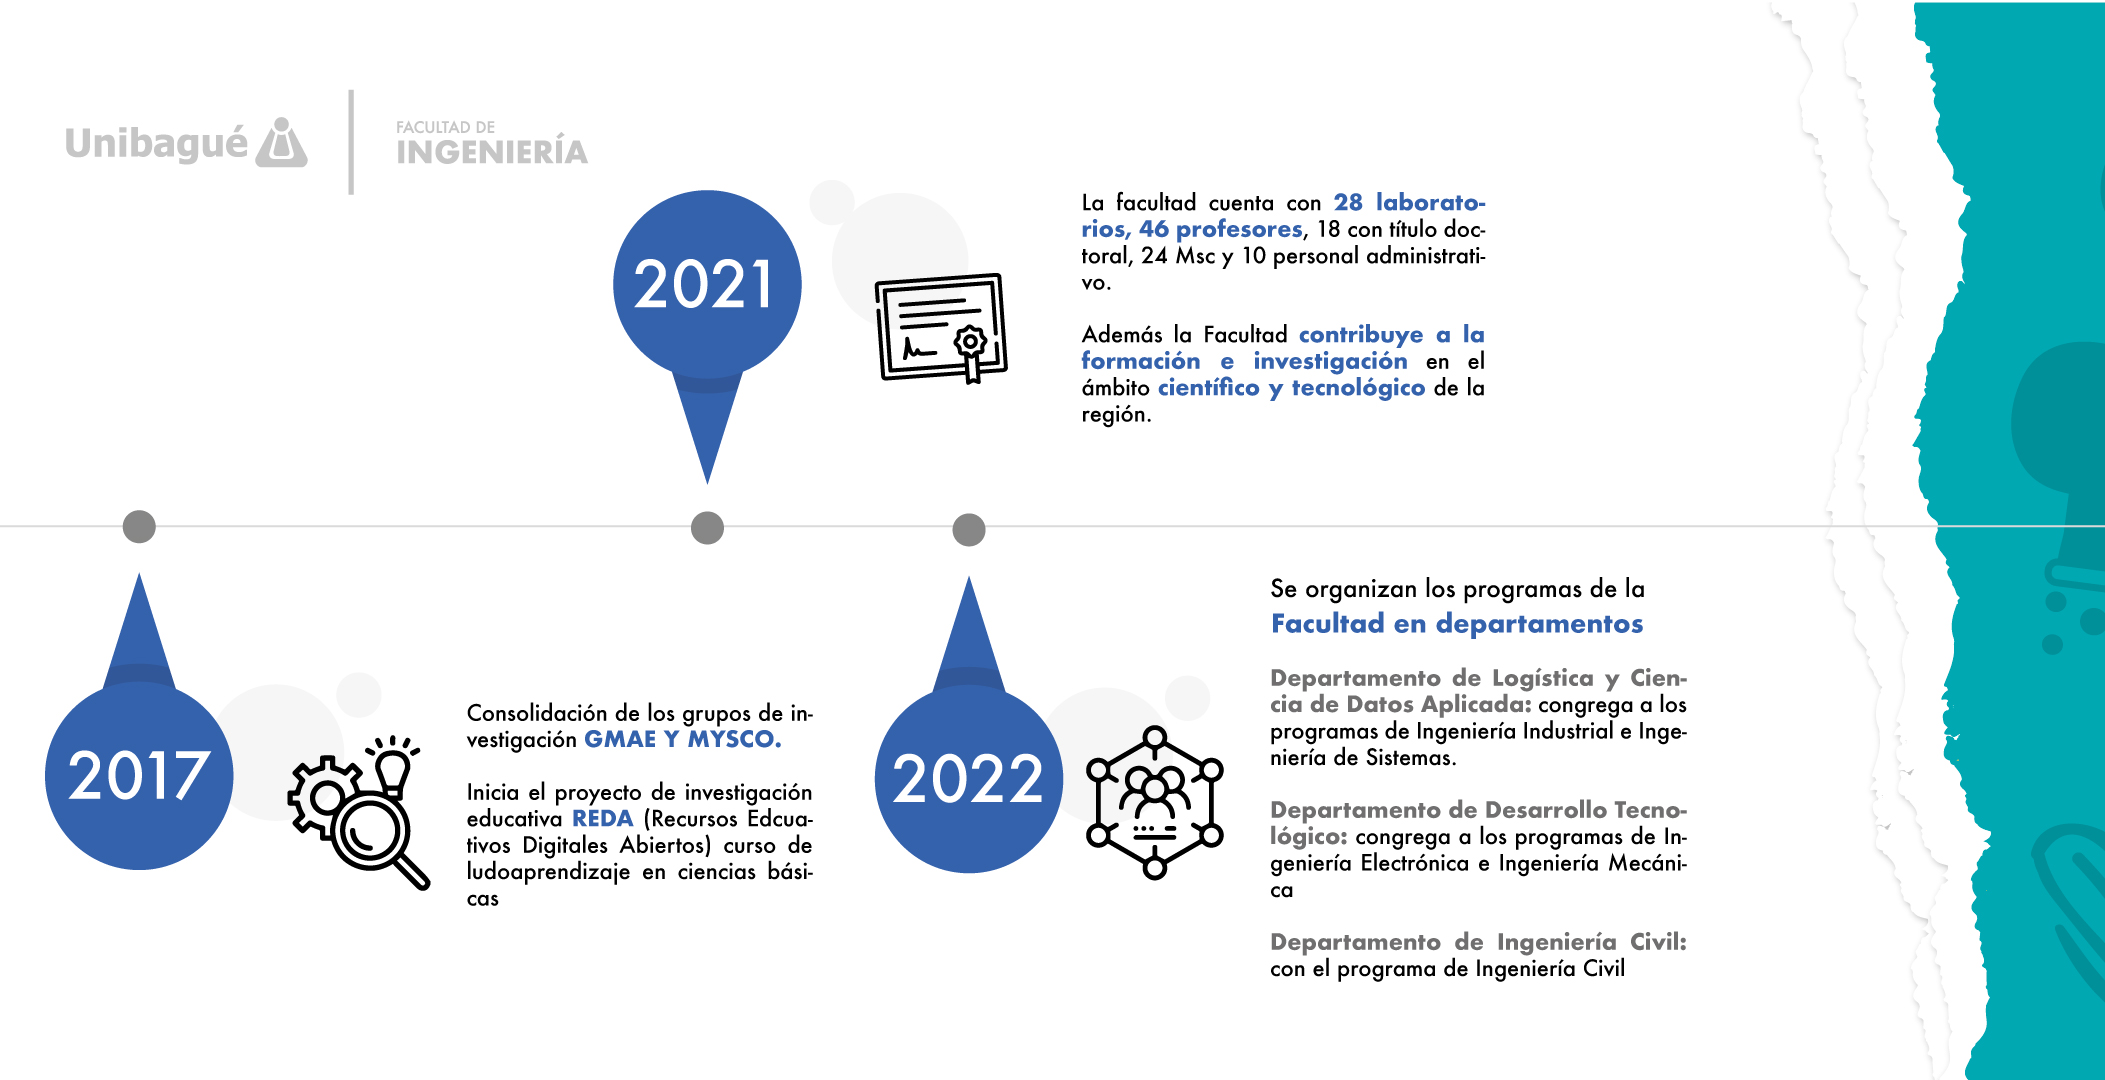 Diapositiva 5. para el 2021 la facultad de ingeniería cuenta con 30 laboratorios, contraportada de la línea del tiempo